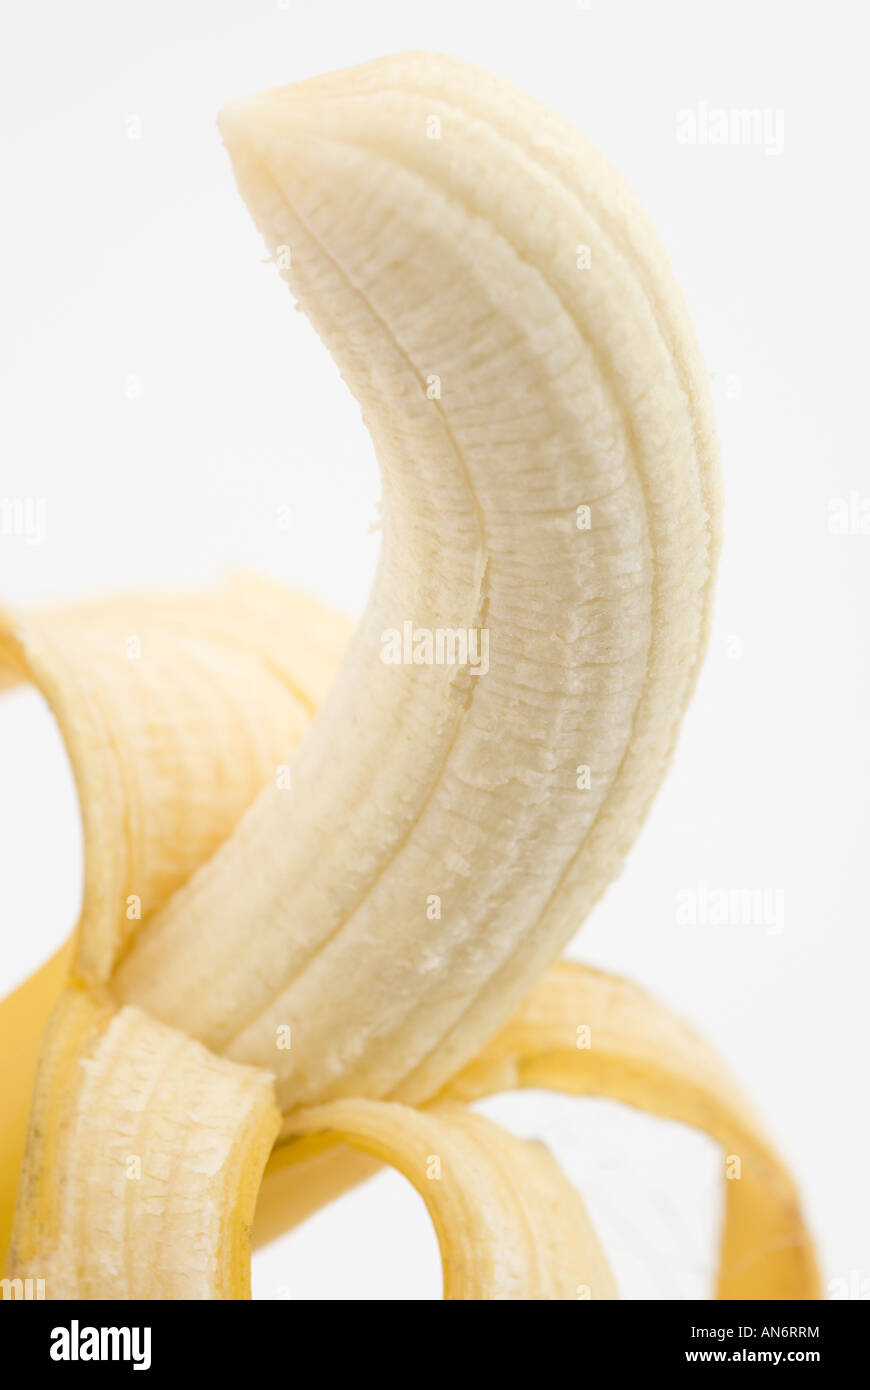 Banana peeled Stock Photo